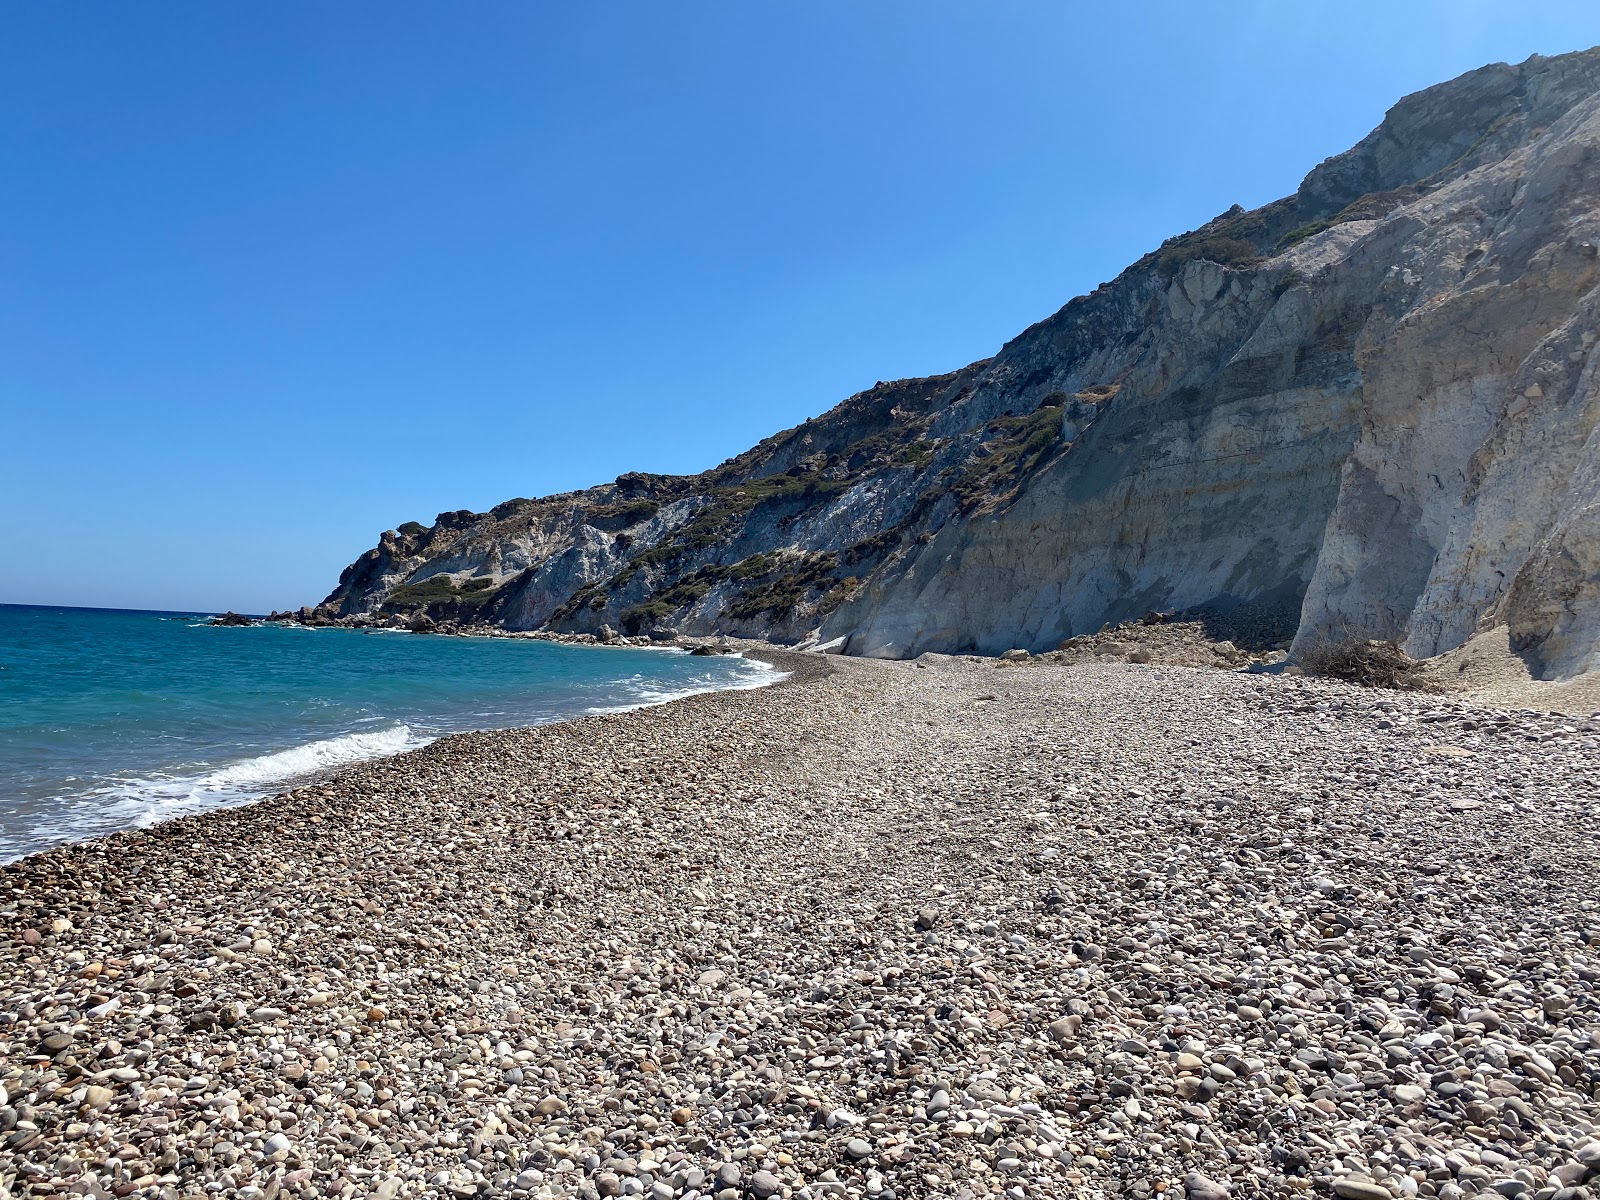 Kolimpisionas beach的照片 带有蓝色纯水表面